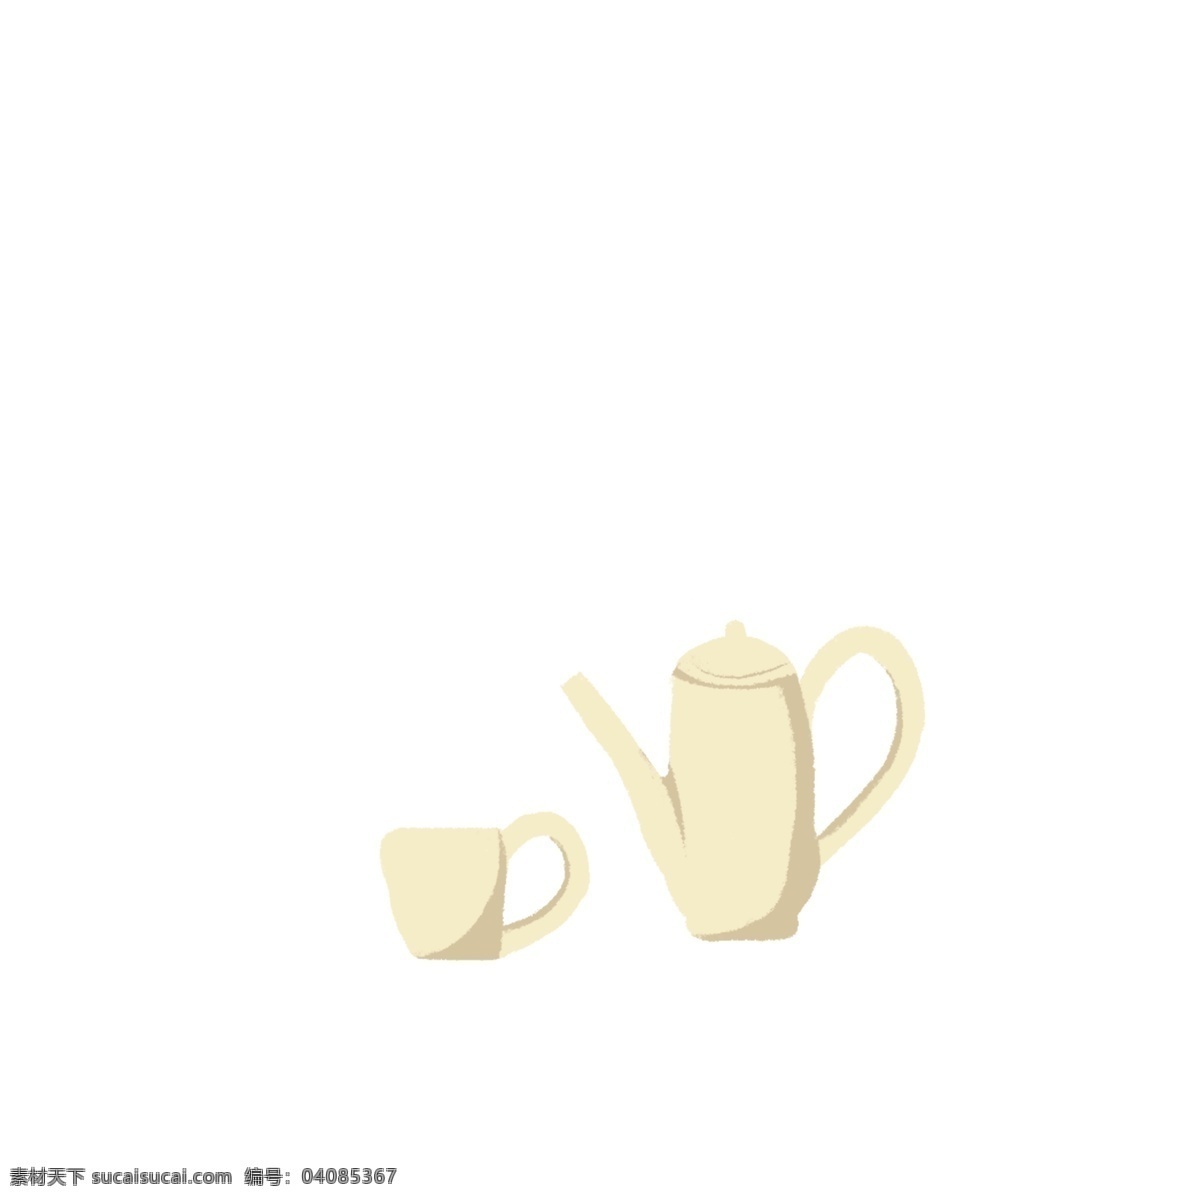 卡通 白色 茶具 免 抠 图 茶壶 卡通图案 卡通插画 生活用品 装水的杯子 茶杯 水壶 免抠图